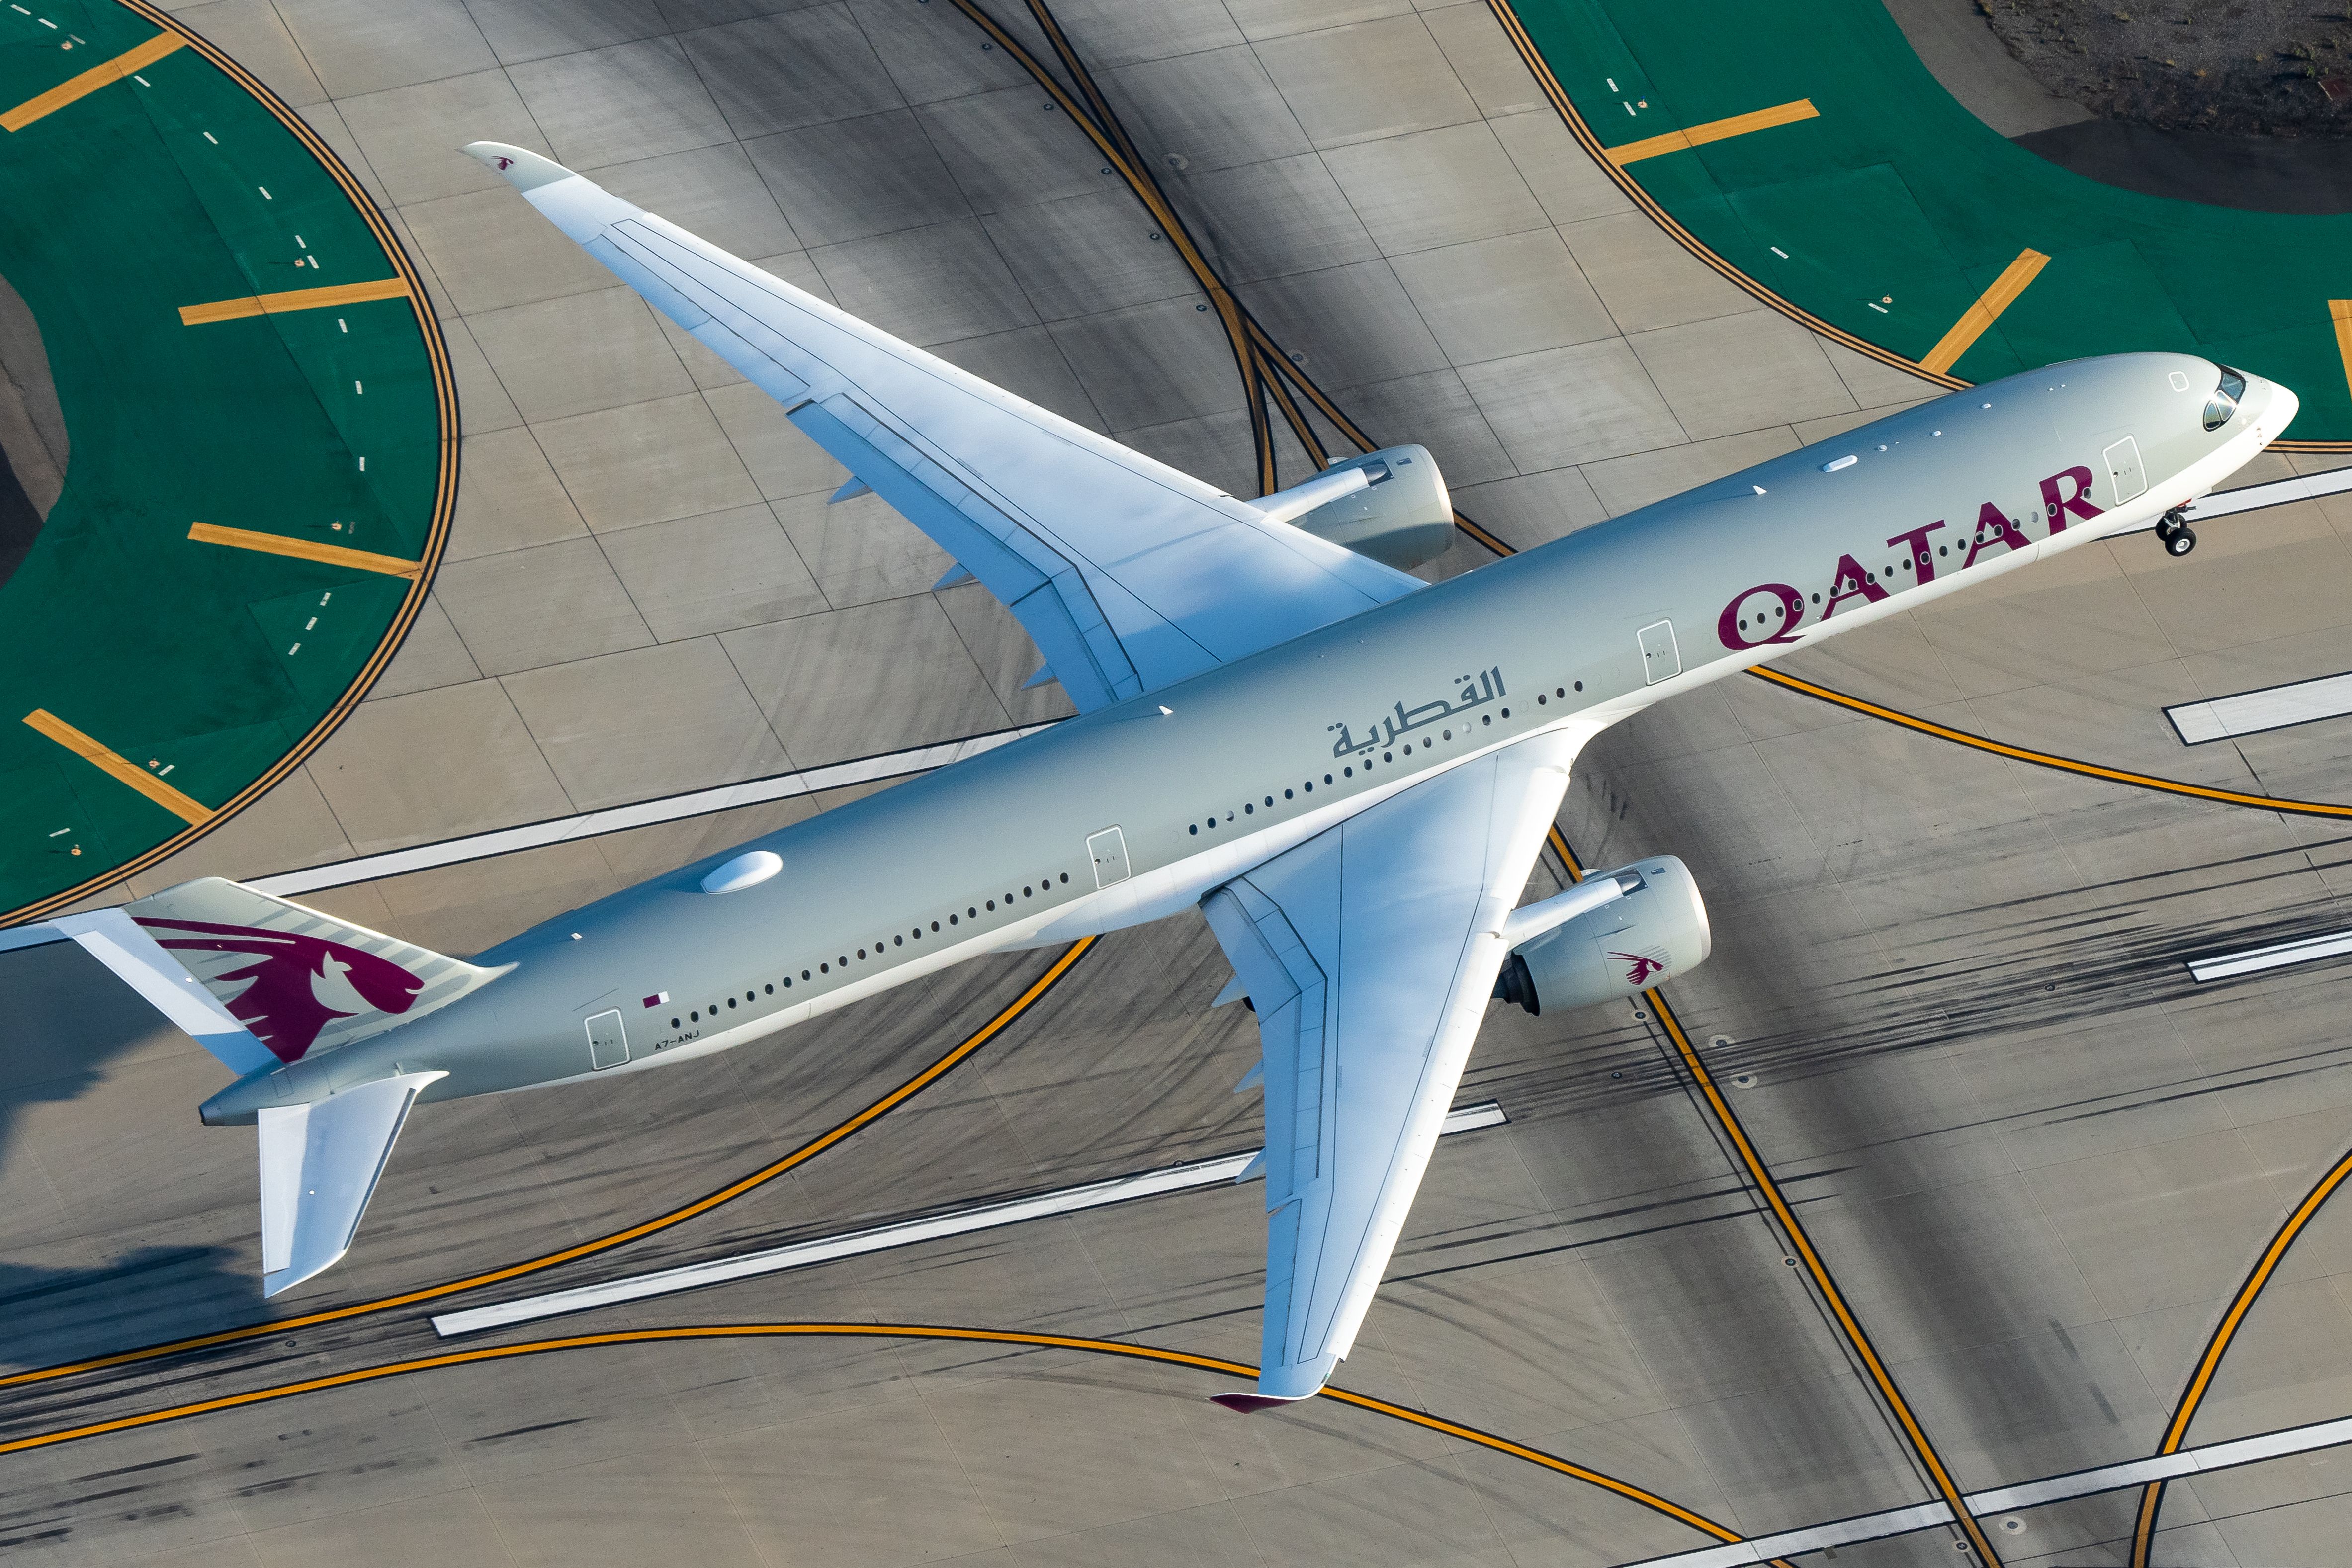 A Qatar Airways Airbus A350 aircraft departing.